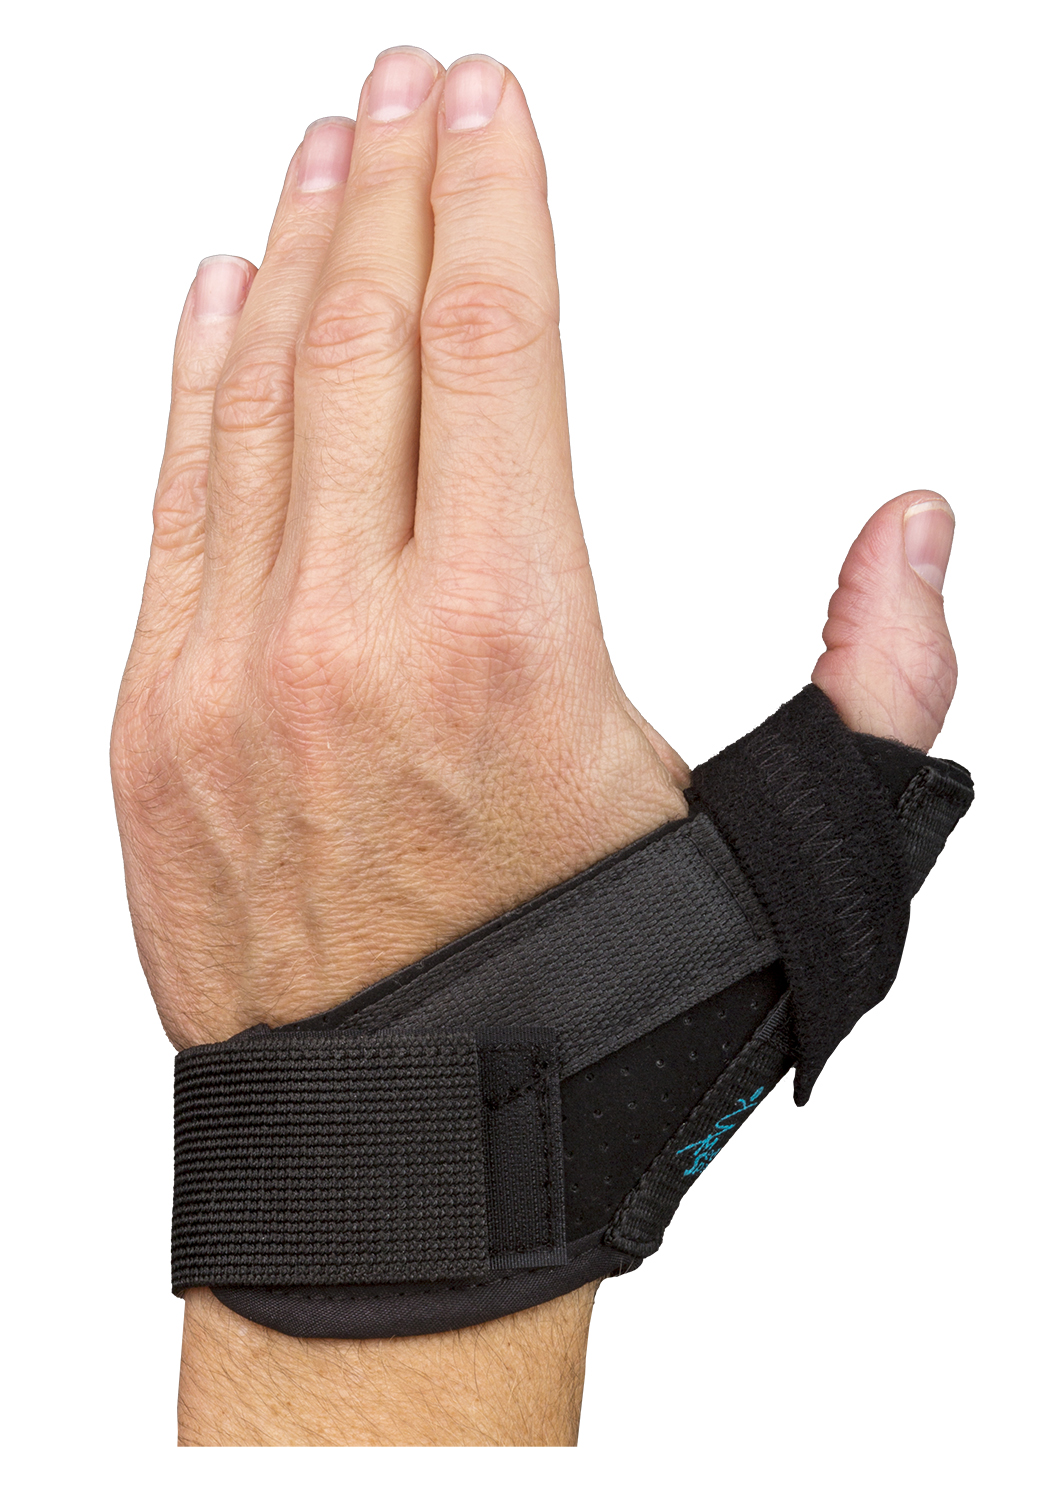 TeePeeTM Thumb Protector – Med Spec